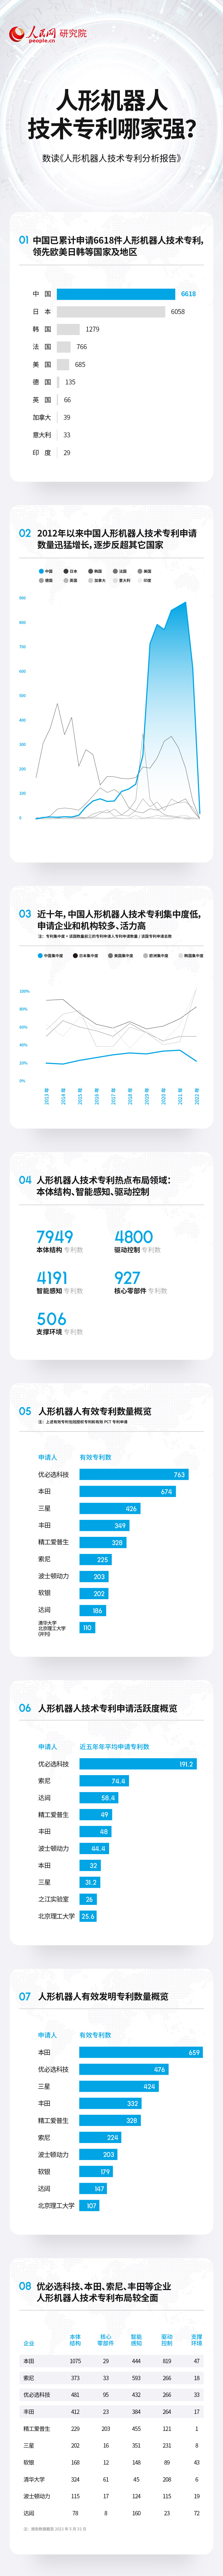 安信131980：技术专利总数居前列 中国人形机器人产业蓬勃发展